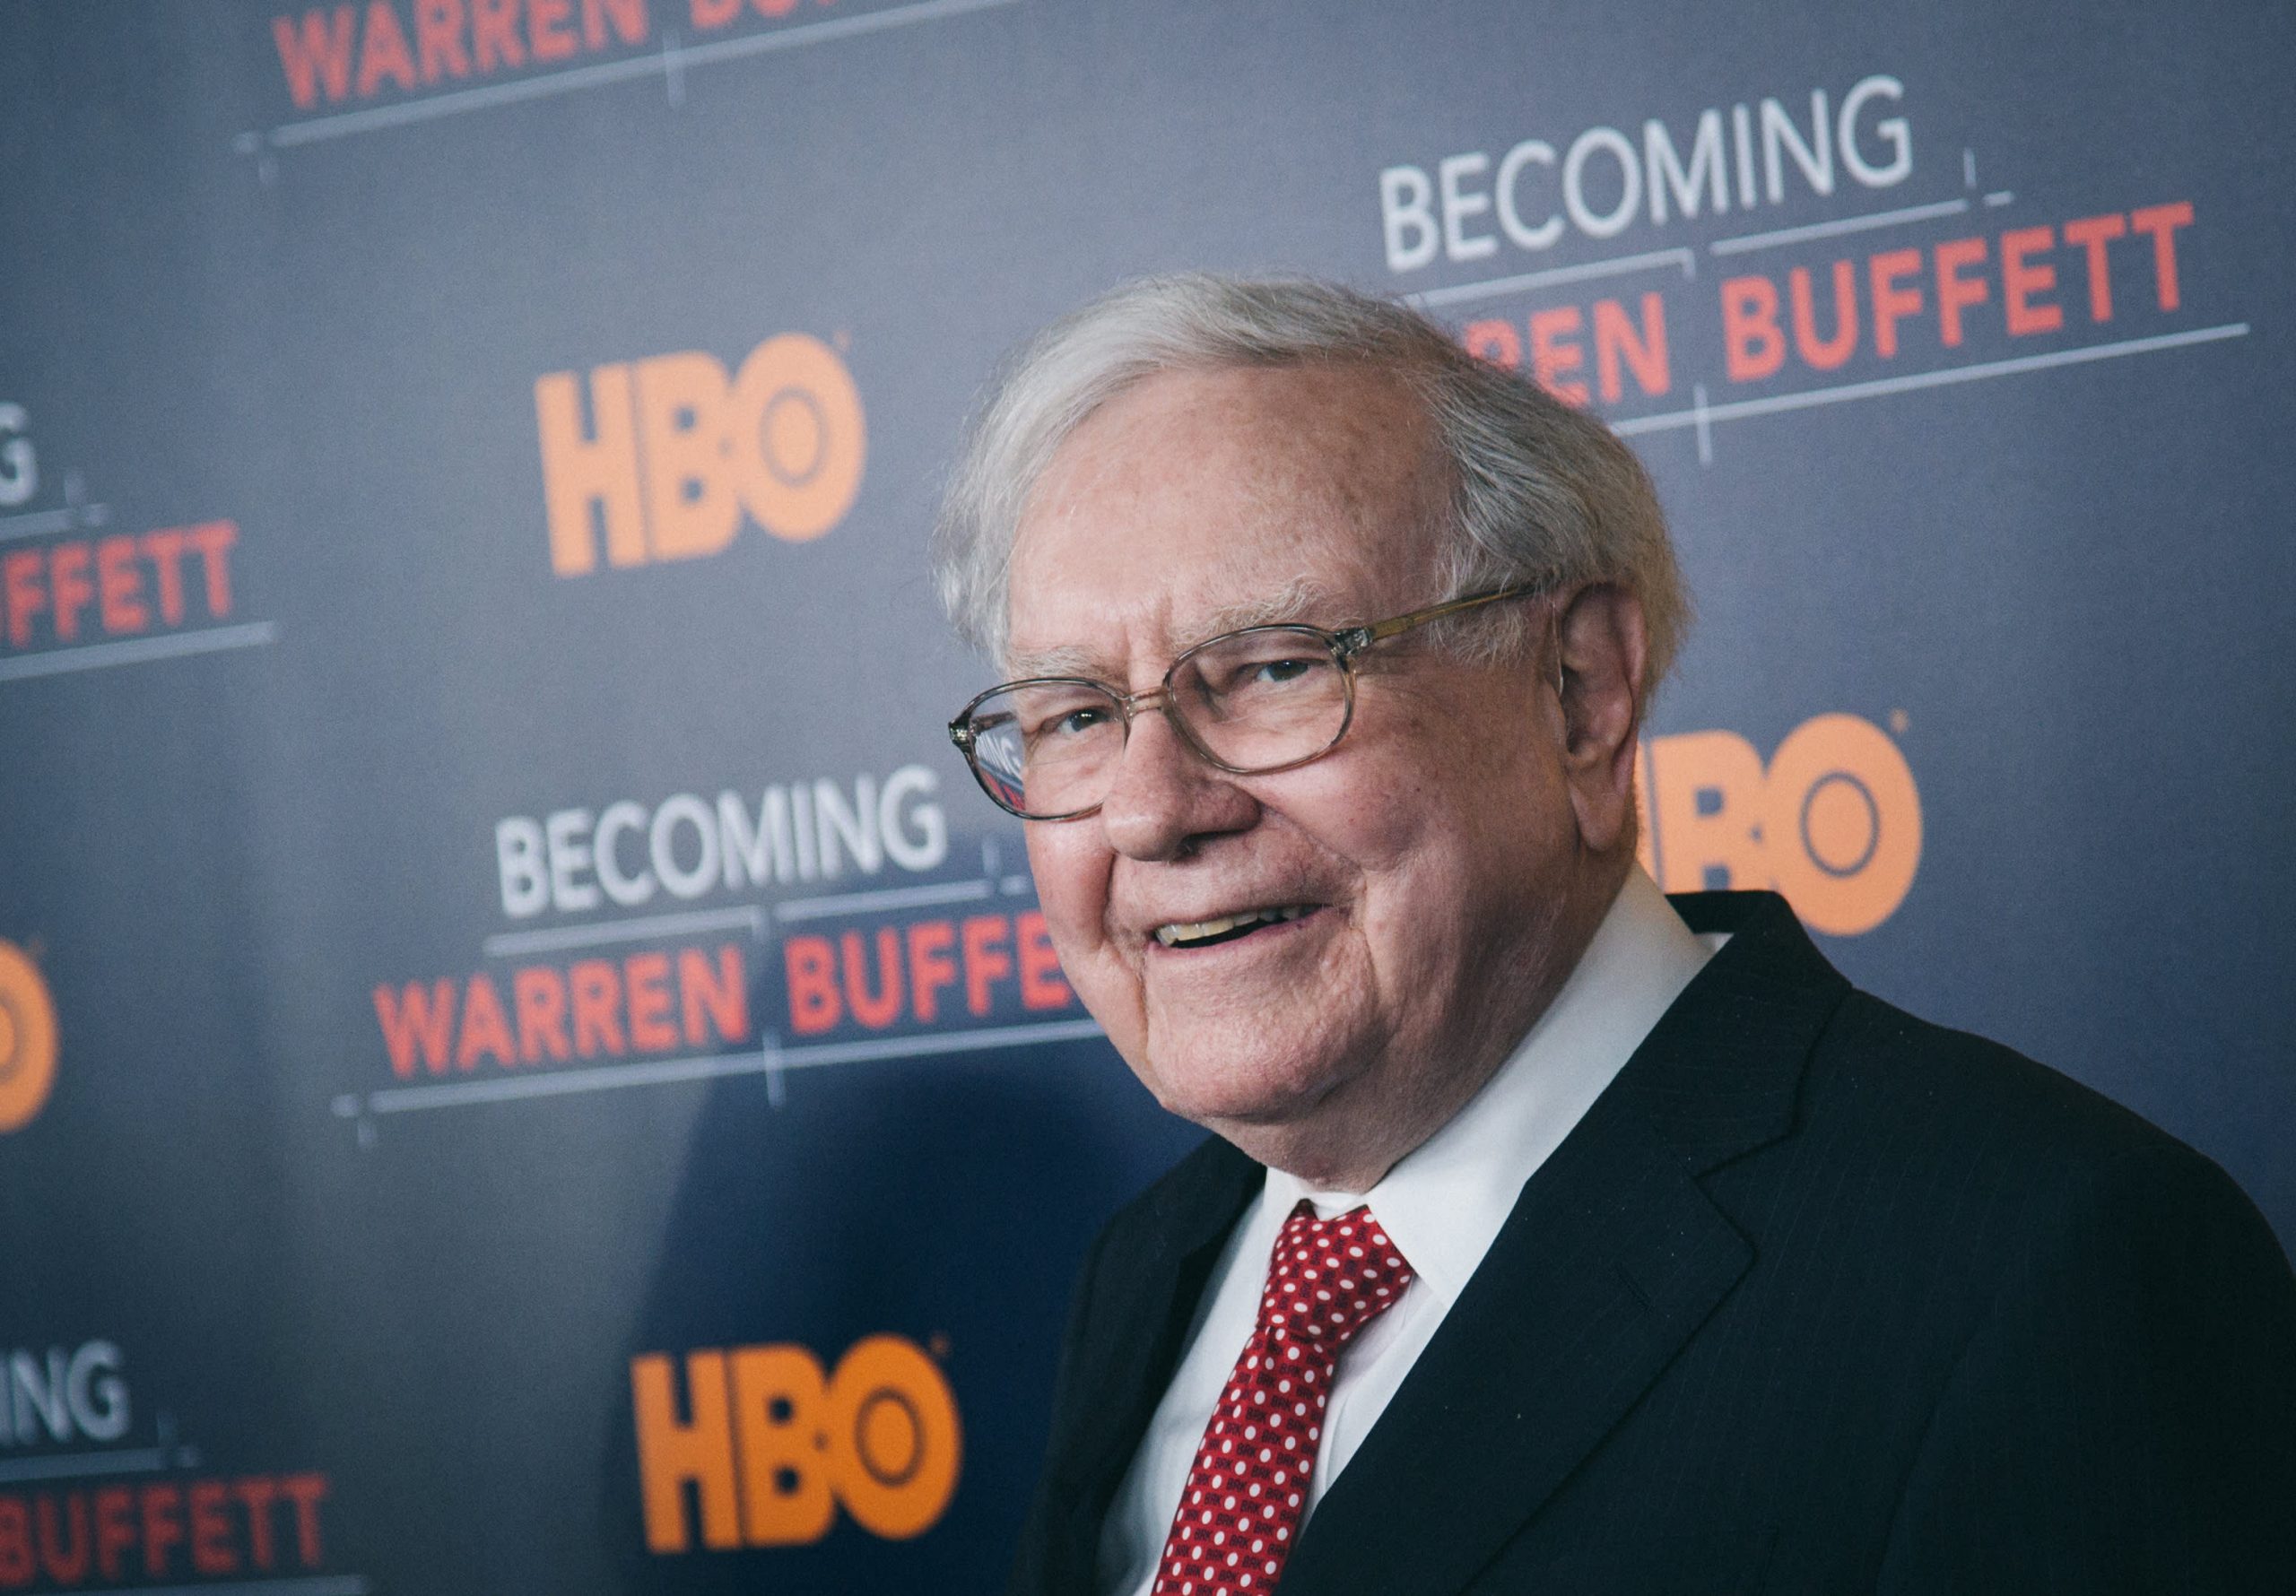 Warren Buffett’s incredible net worth 2022